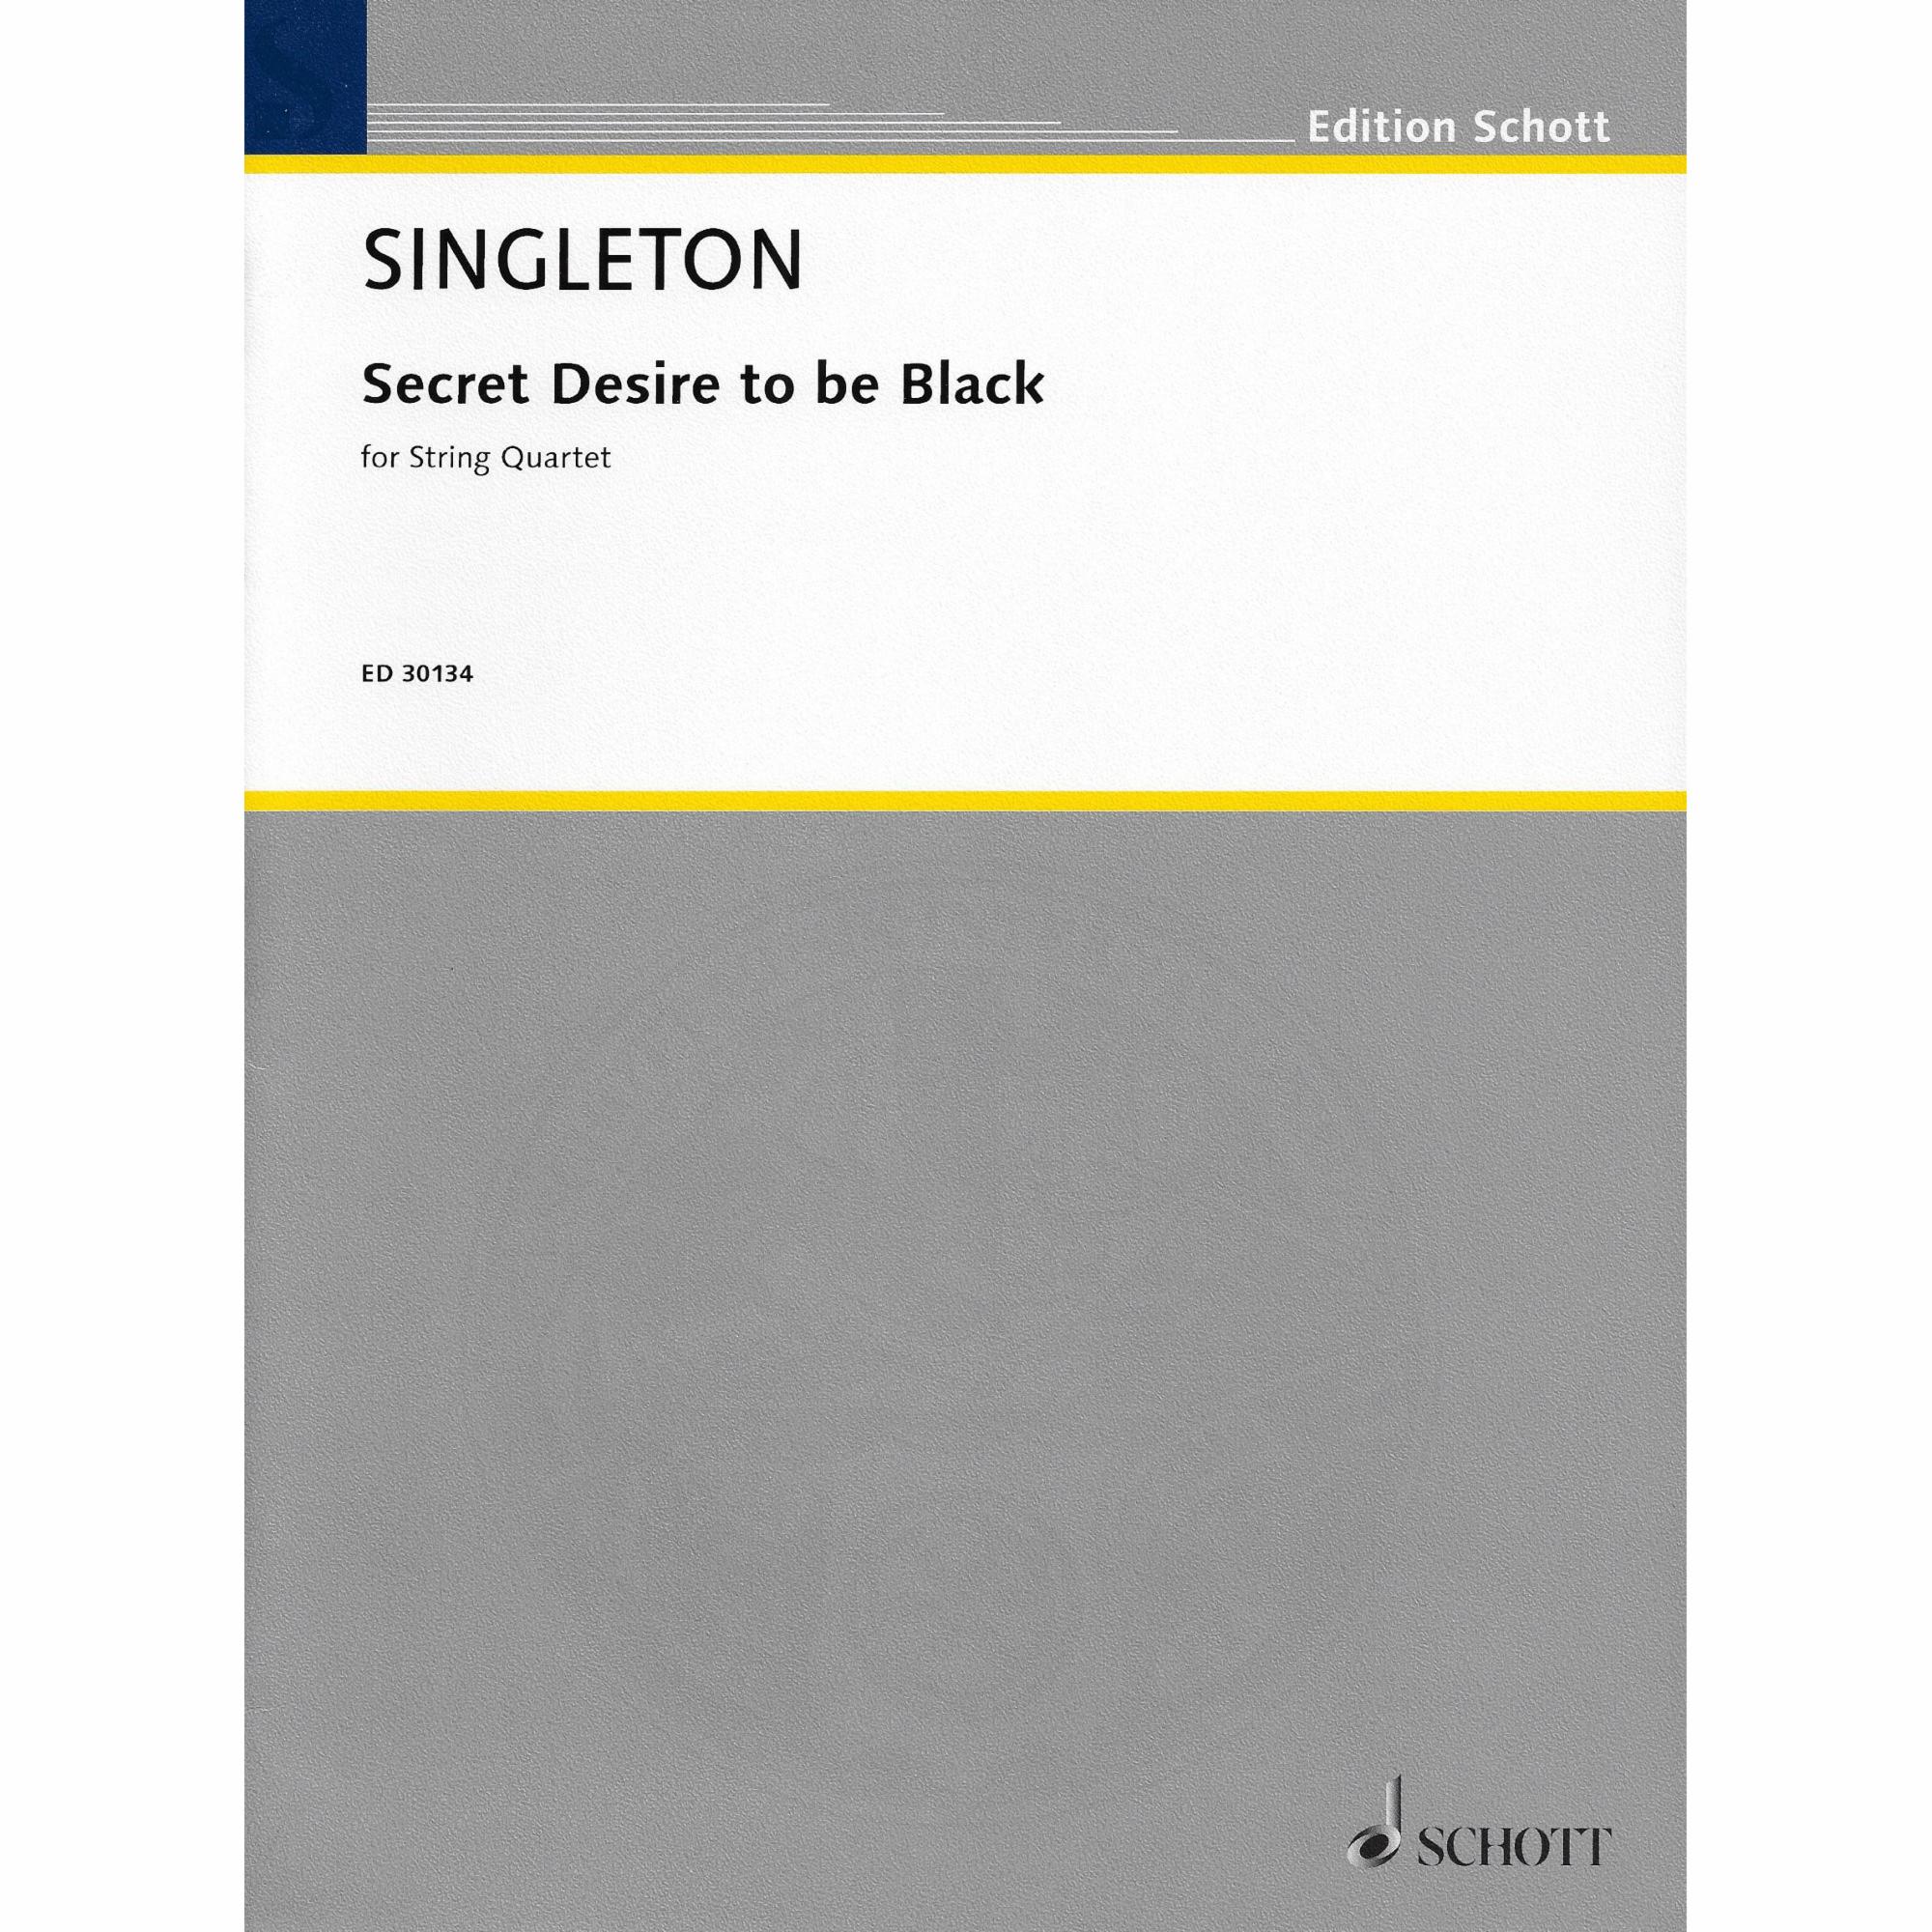 Singleton -- Secret Desire to be Black for String Quartet